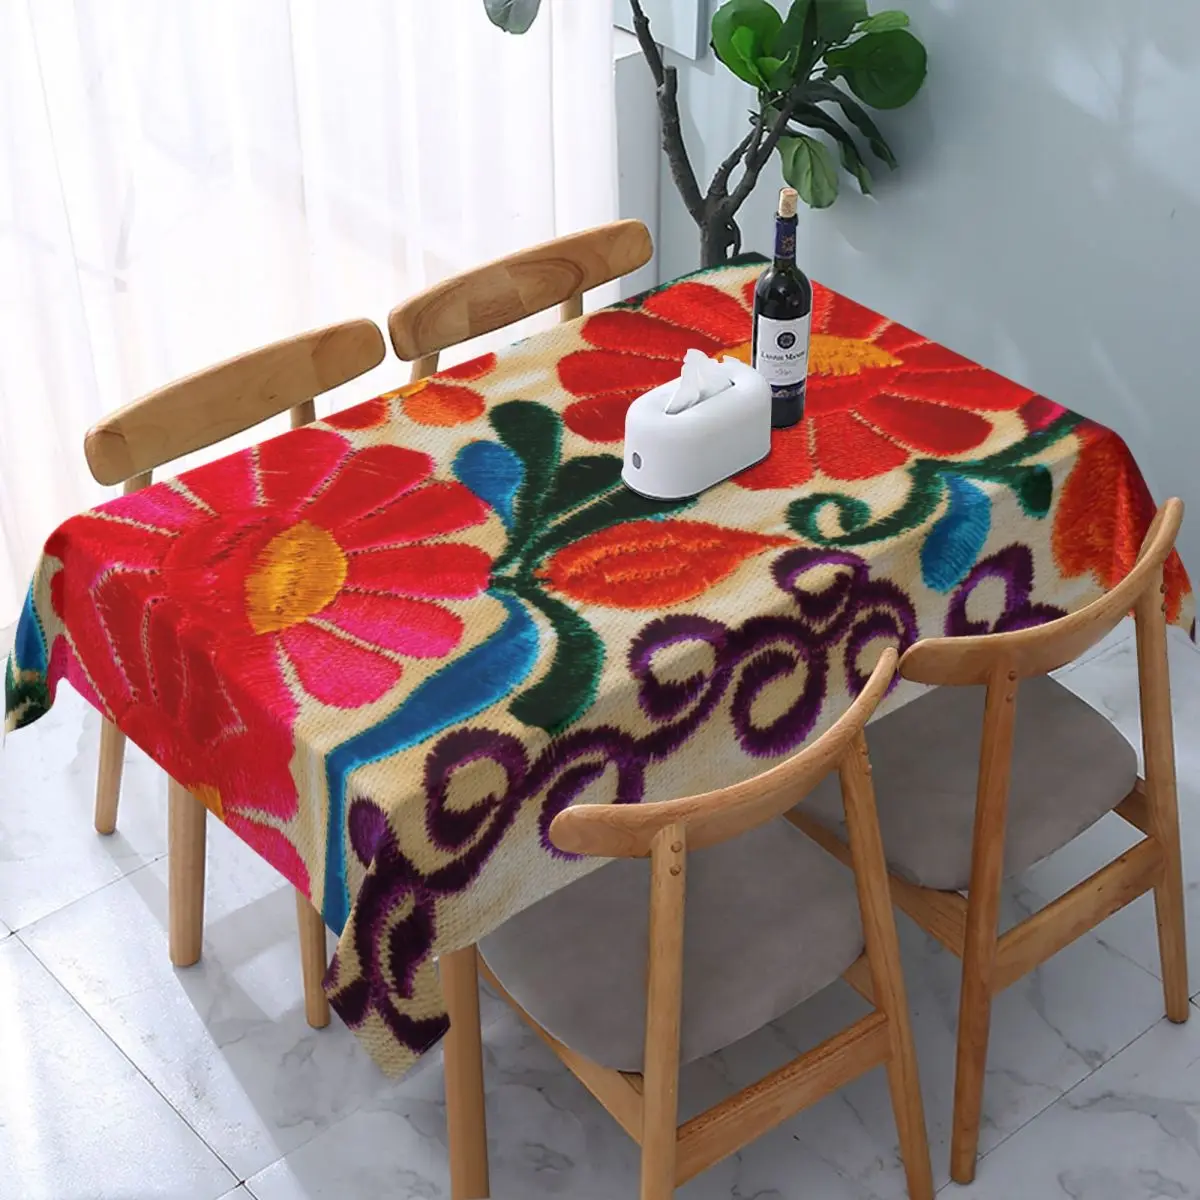 Прямоугольная водонепроницаемая скатерть с вышивкой Мексиканскими цветами, Эластичный край на подкладке, Текстильная цветочная народная скатерть